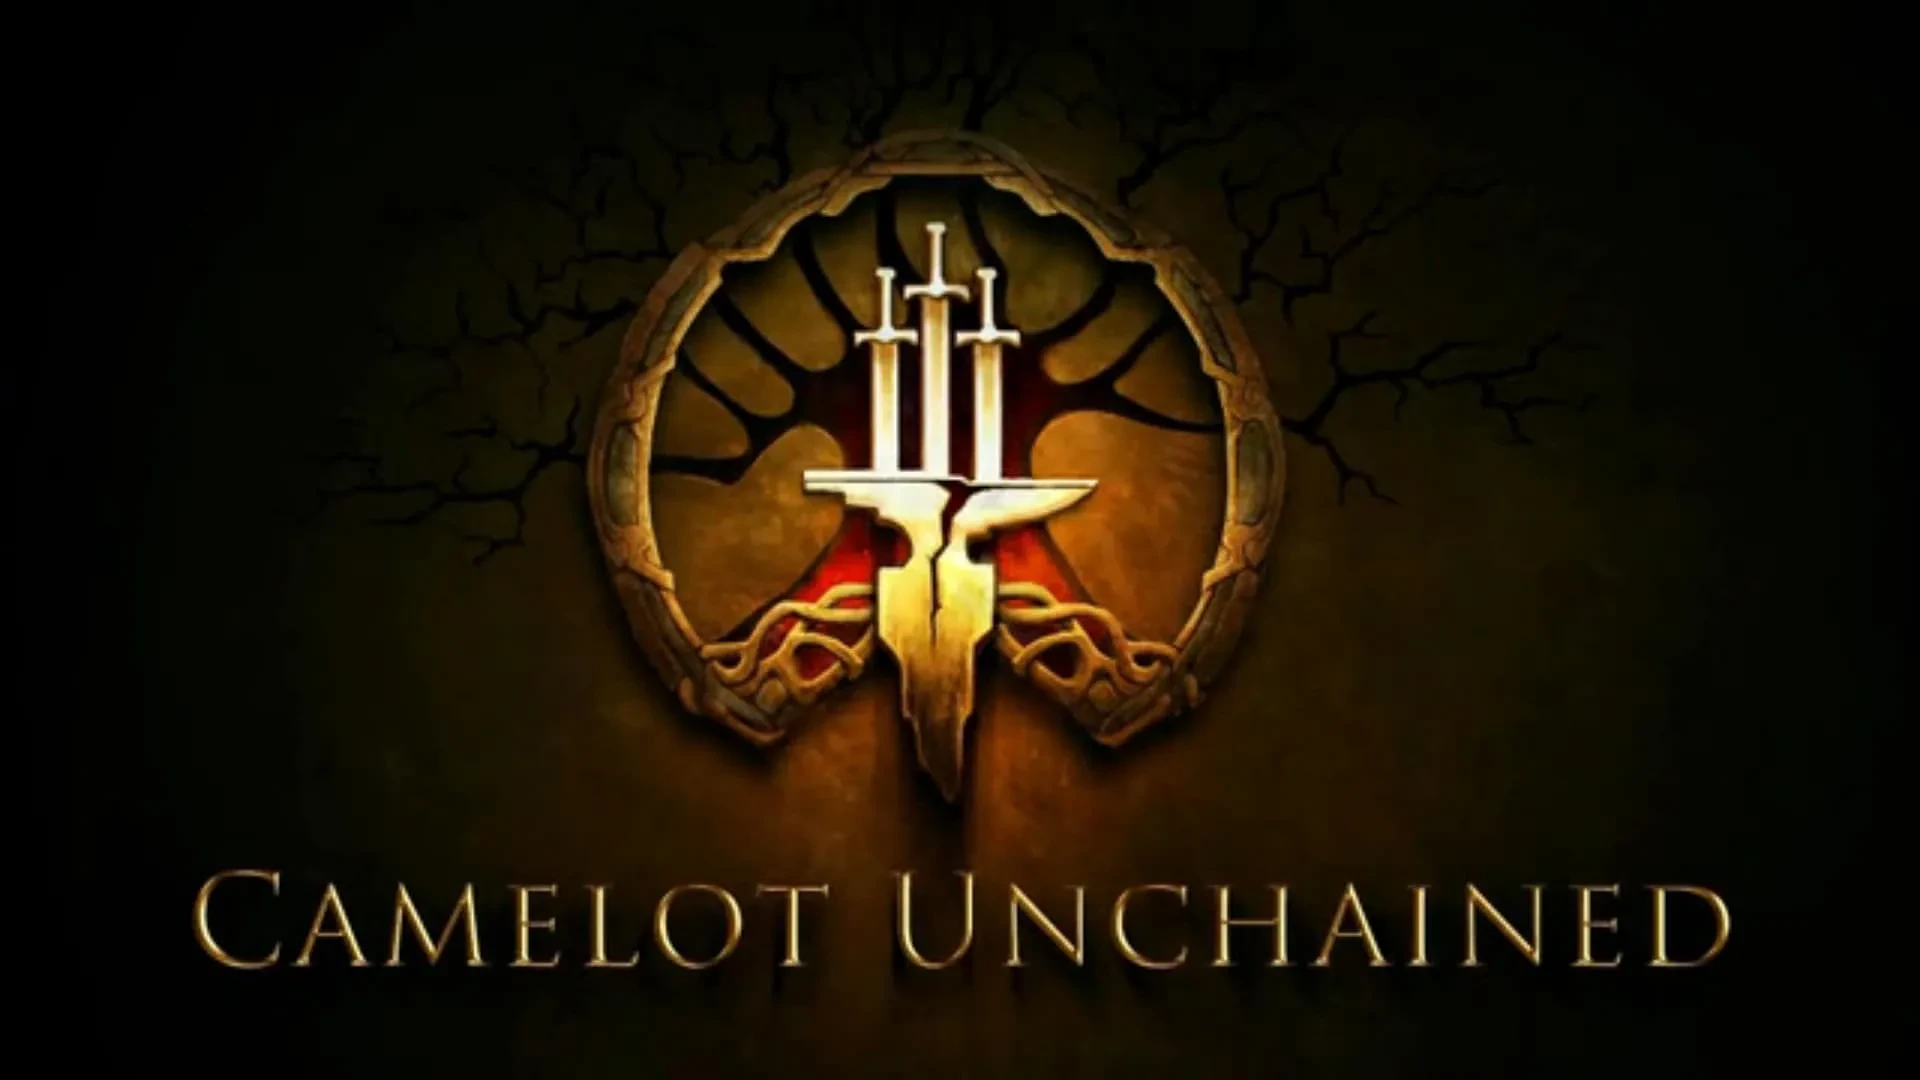 Camelot Unchained zyskał 15 milionów dolarów na rozwój